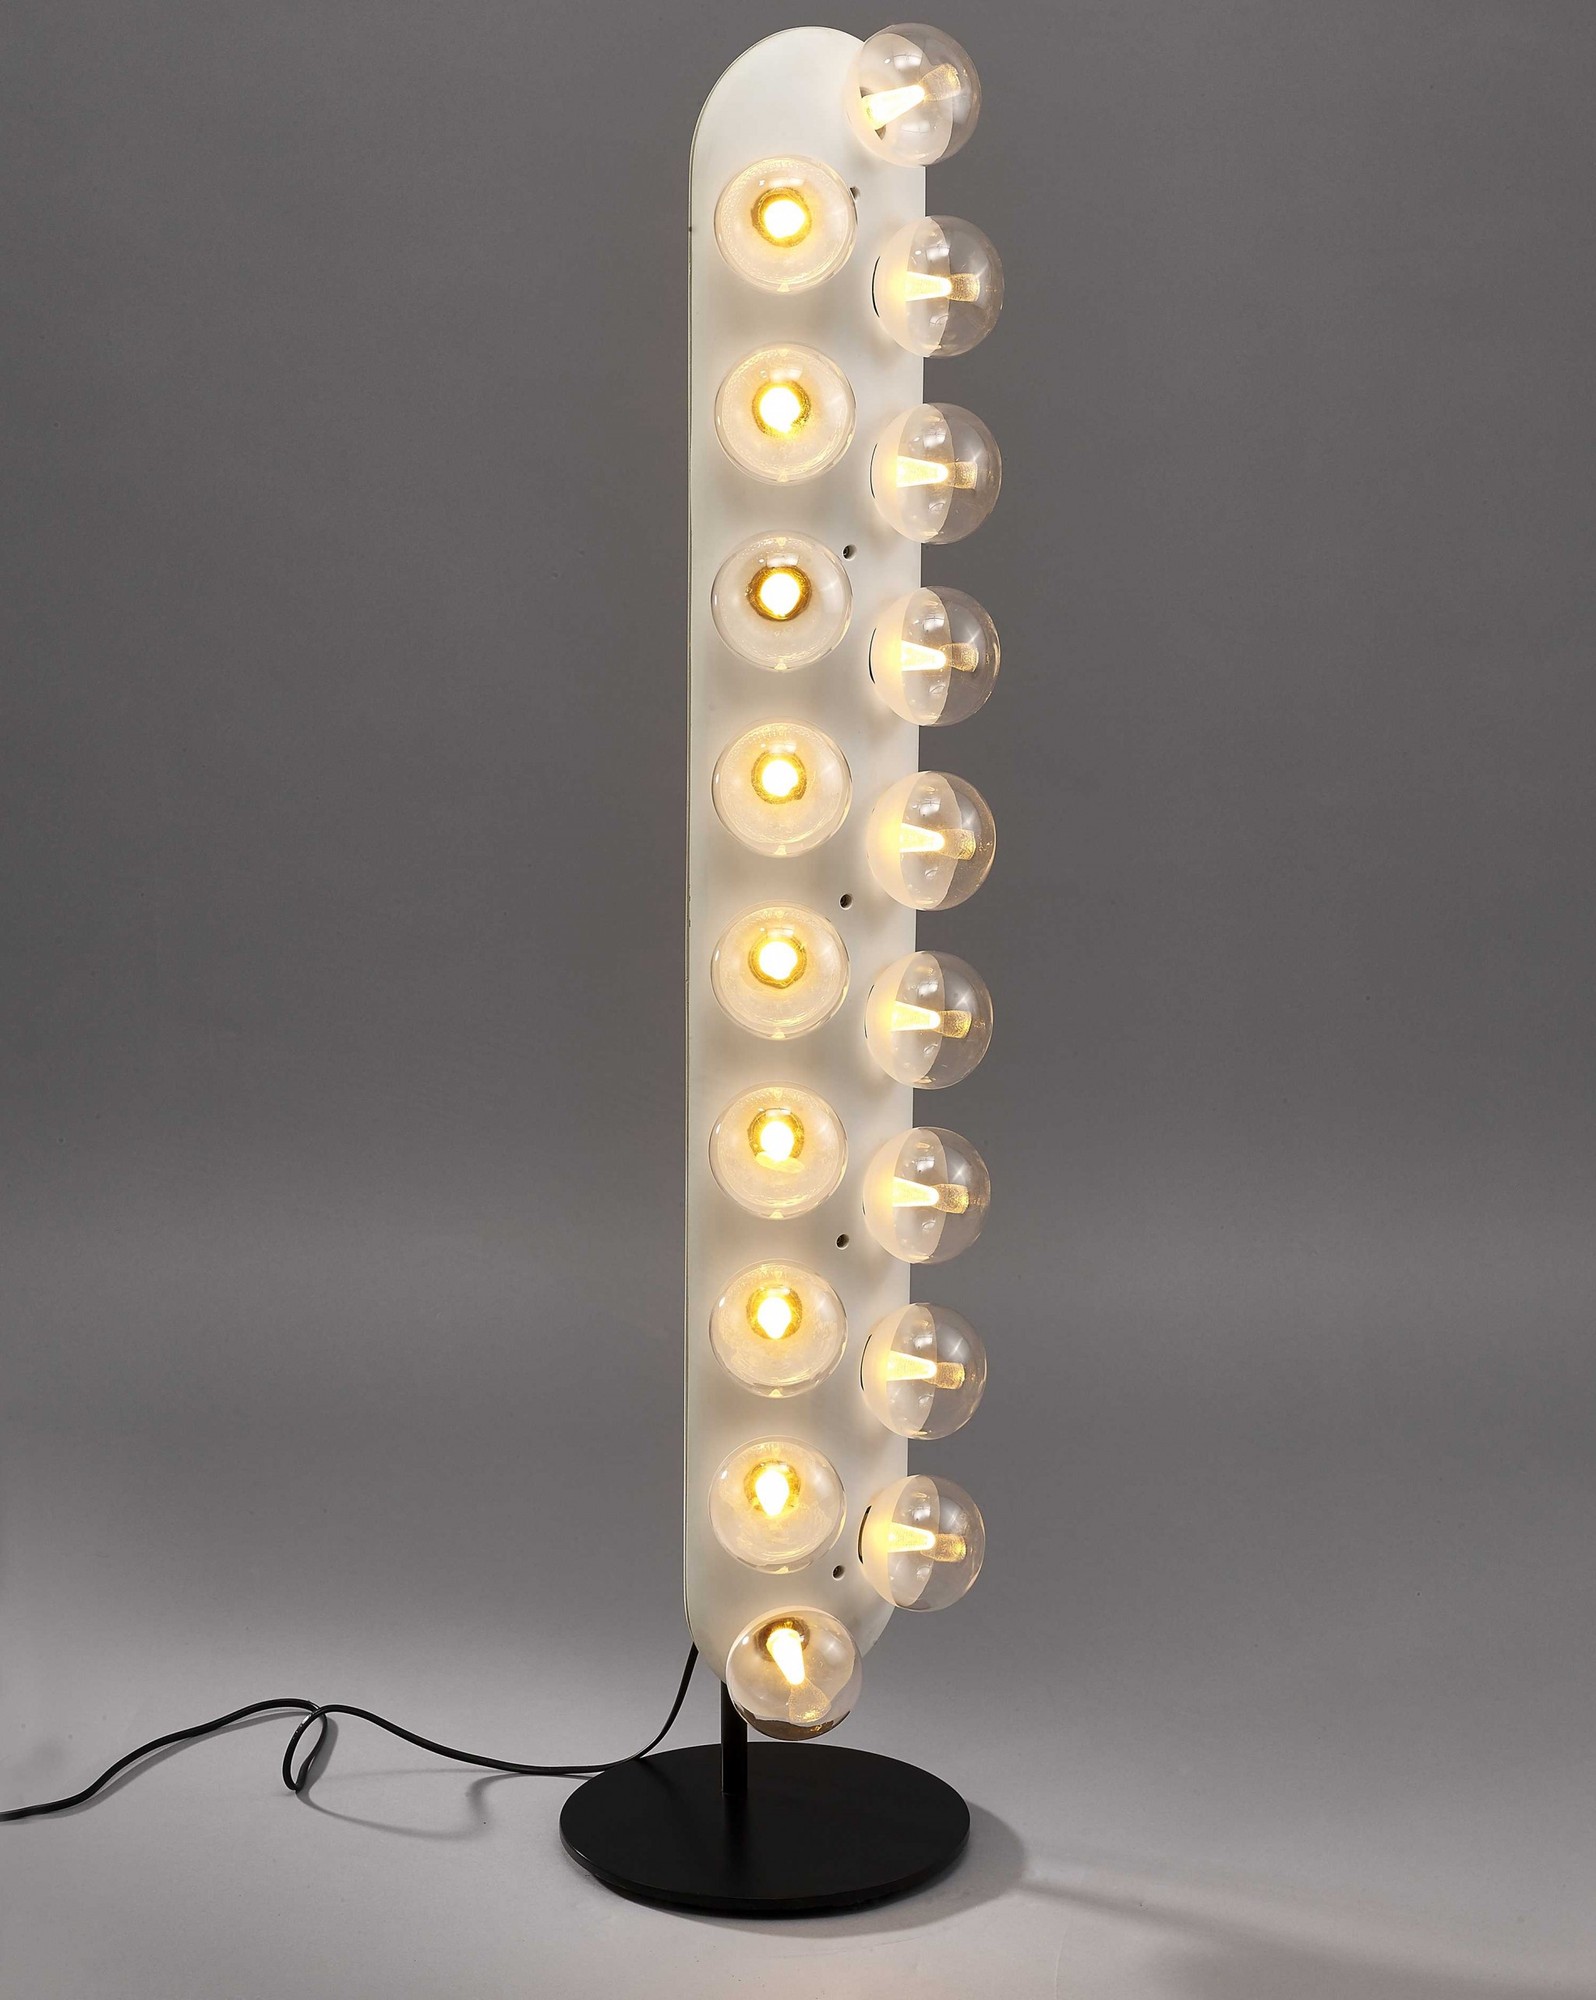 10" X 42.5" White Aluminum Floor Lamp